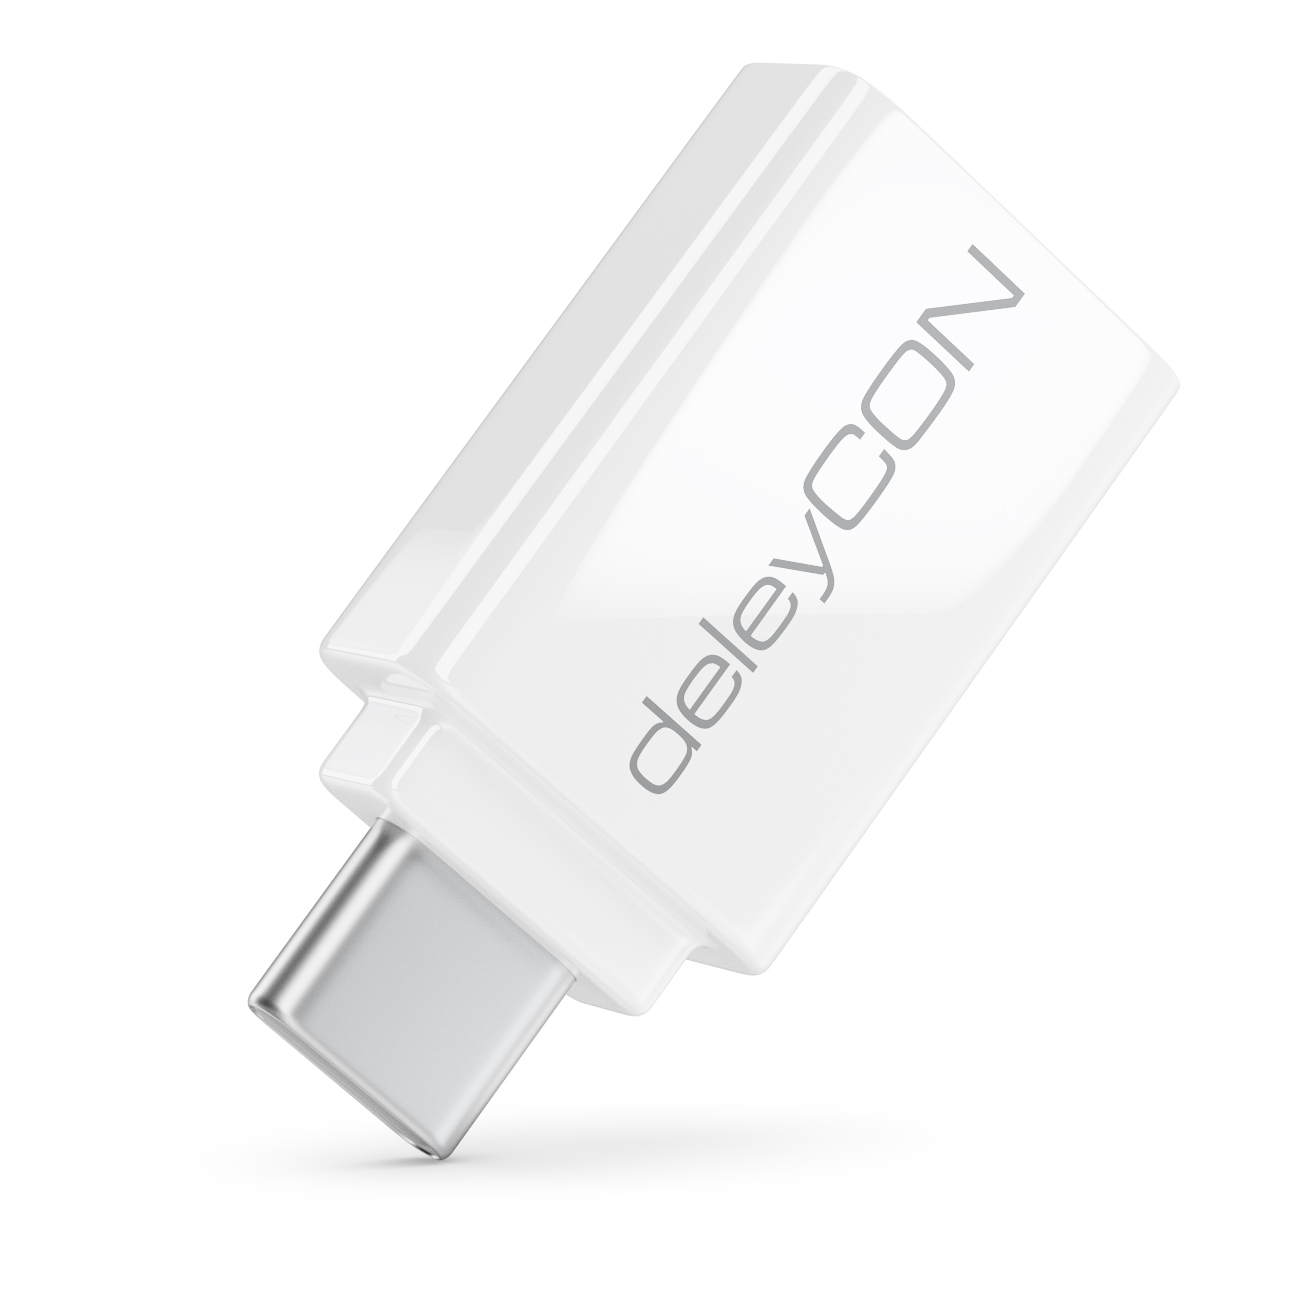 deleyCON 2 Stück USB C 3.0 OTG Adapter - USB zu USB C - bis zu 5 Gbit/s -  Für Apple Samsung Google Huawei Xiaomi Handy Smartphone Tablet Laptop  Chromebook Netbook - Weiß - deleyCON